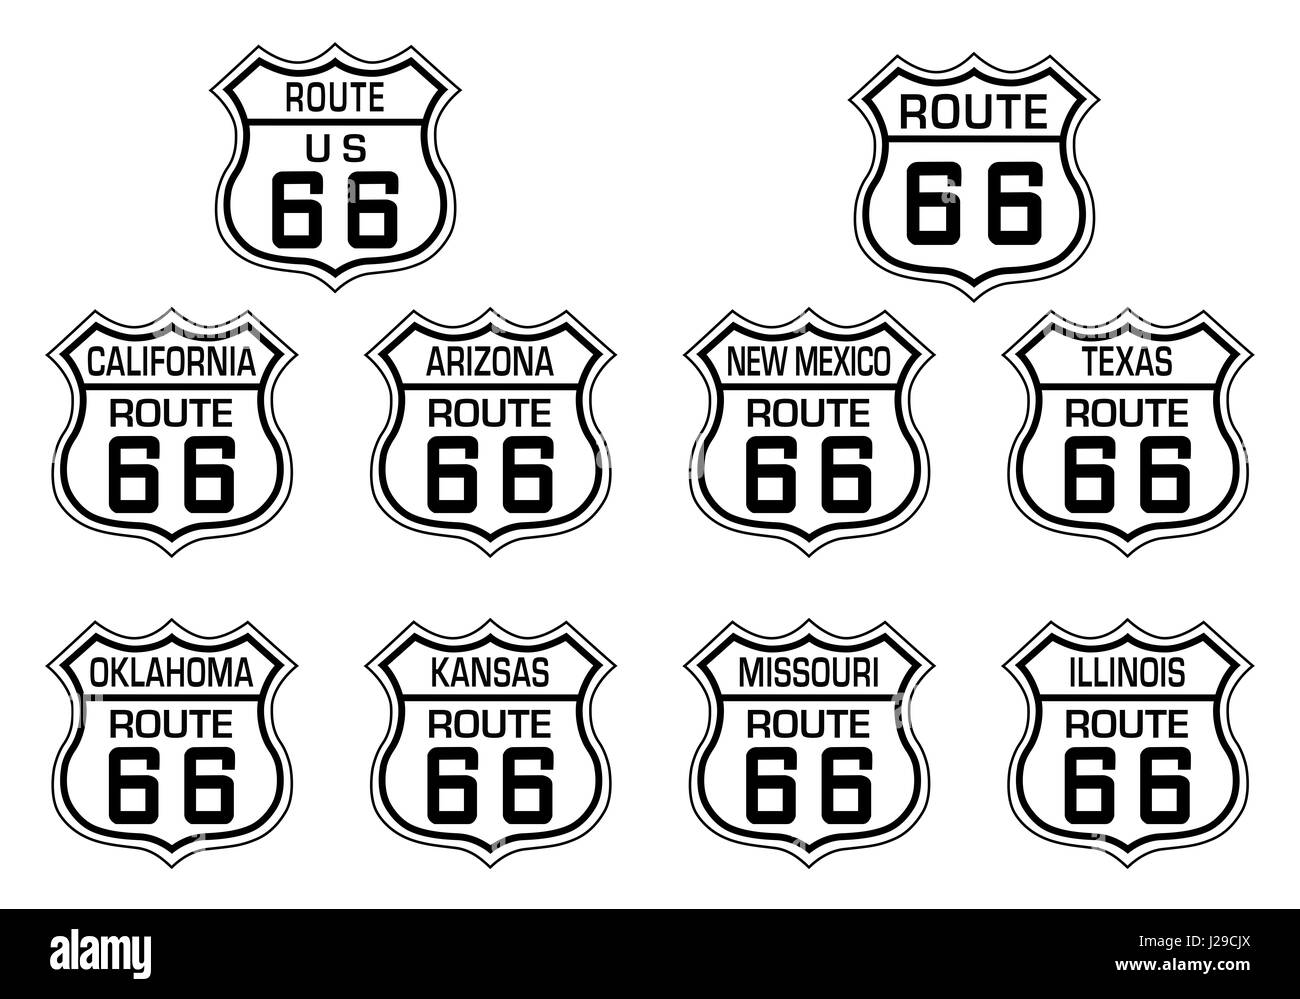 Route 66 symbol Banque d'images noir et blanc - Alamy